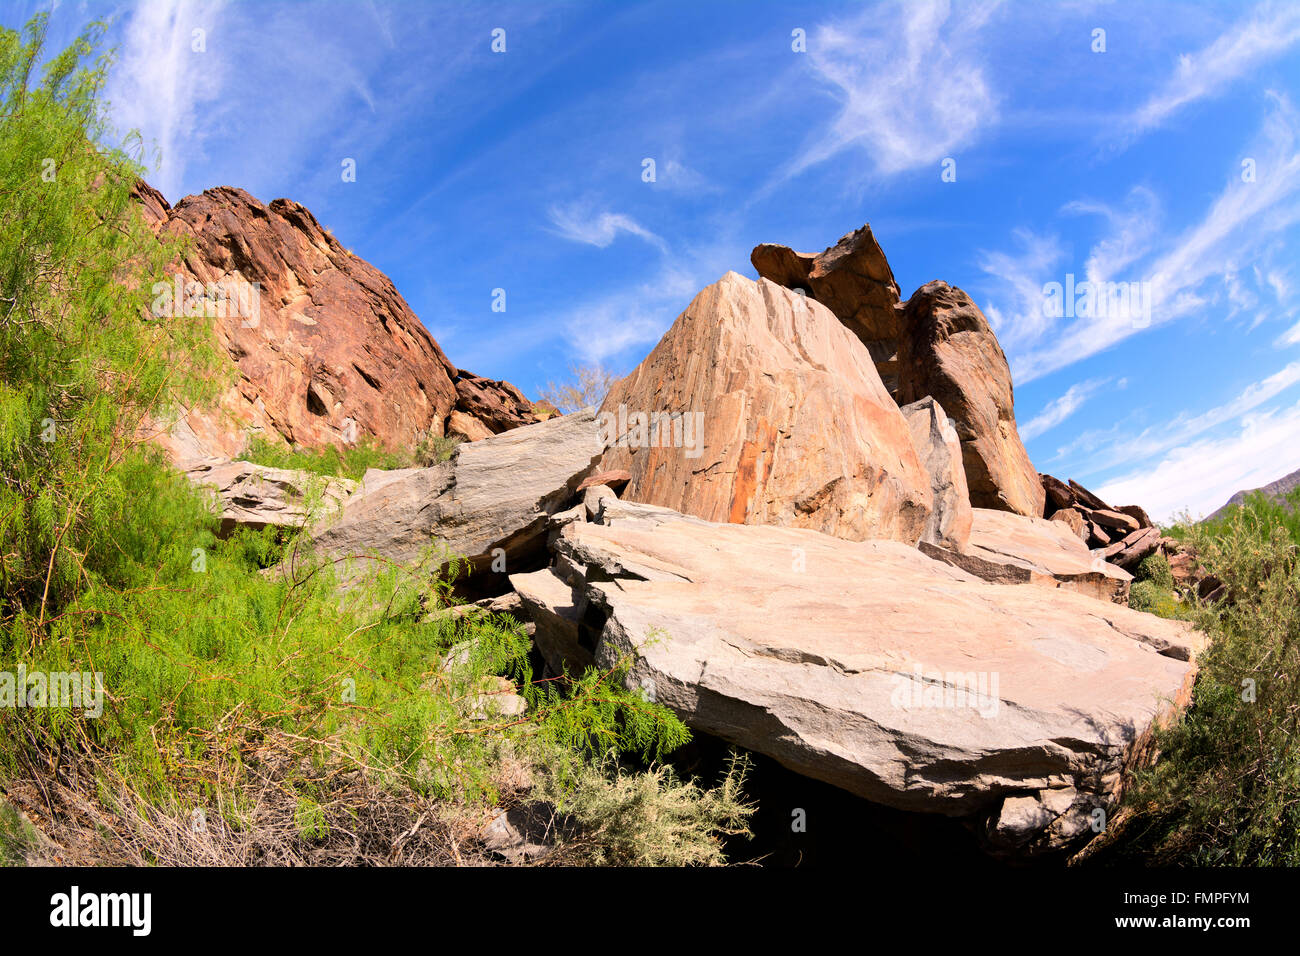 Vista panorámica de una montaña de roca pizarra enmarcada contra un cielo azul. Rodada en Palm Springs, California. Foto de stock